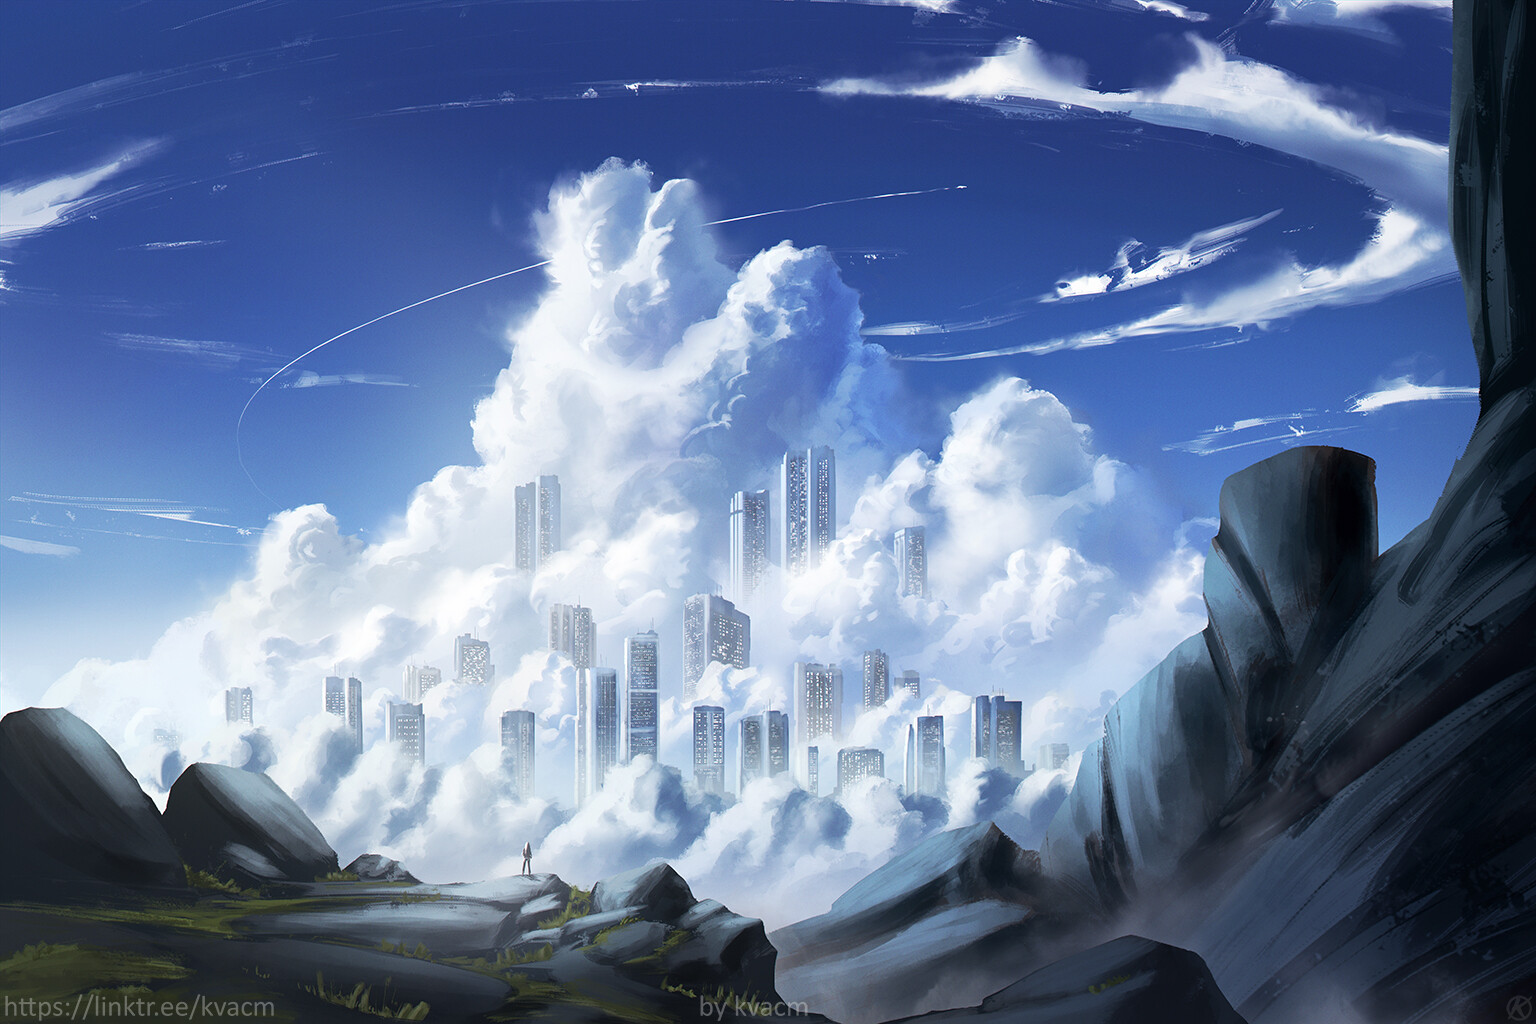 City in Clouds